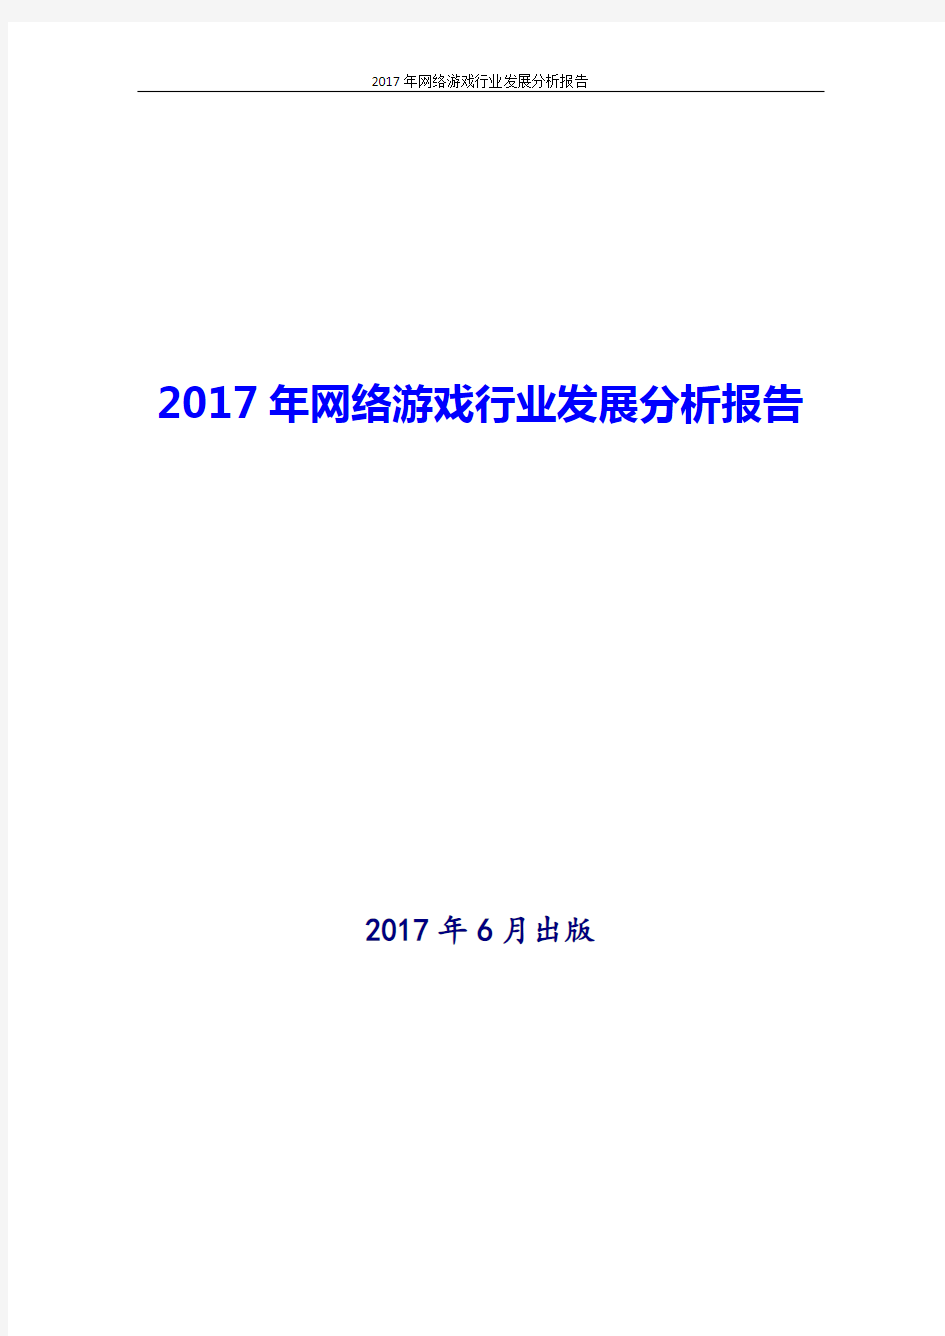 2017-2018年最新版中国网络游戏行业现状及发展投资策略分析报告